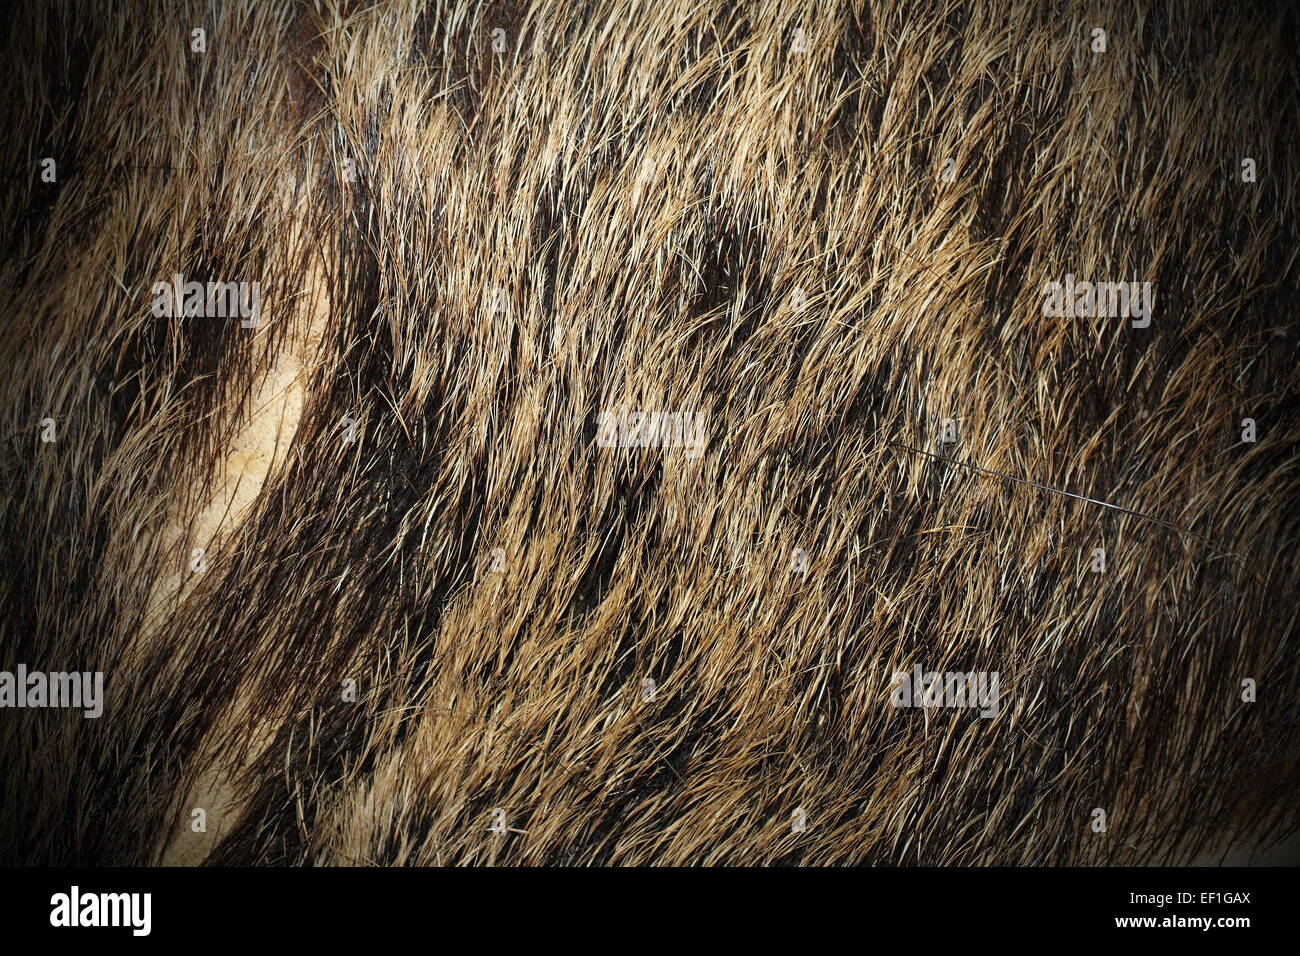 Bella la texture del cinghiale ( Sus scrofa ) pelliccia con vignette Foto Stock